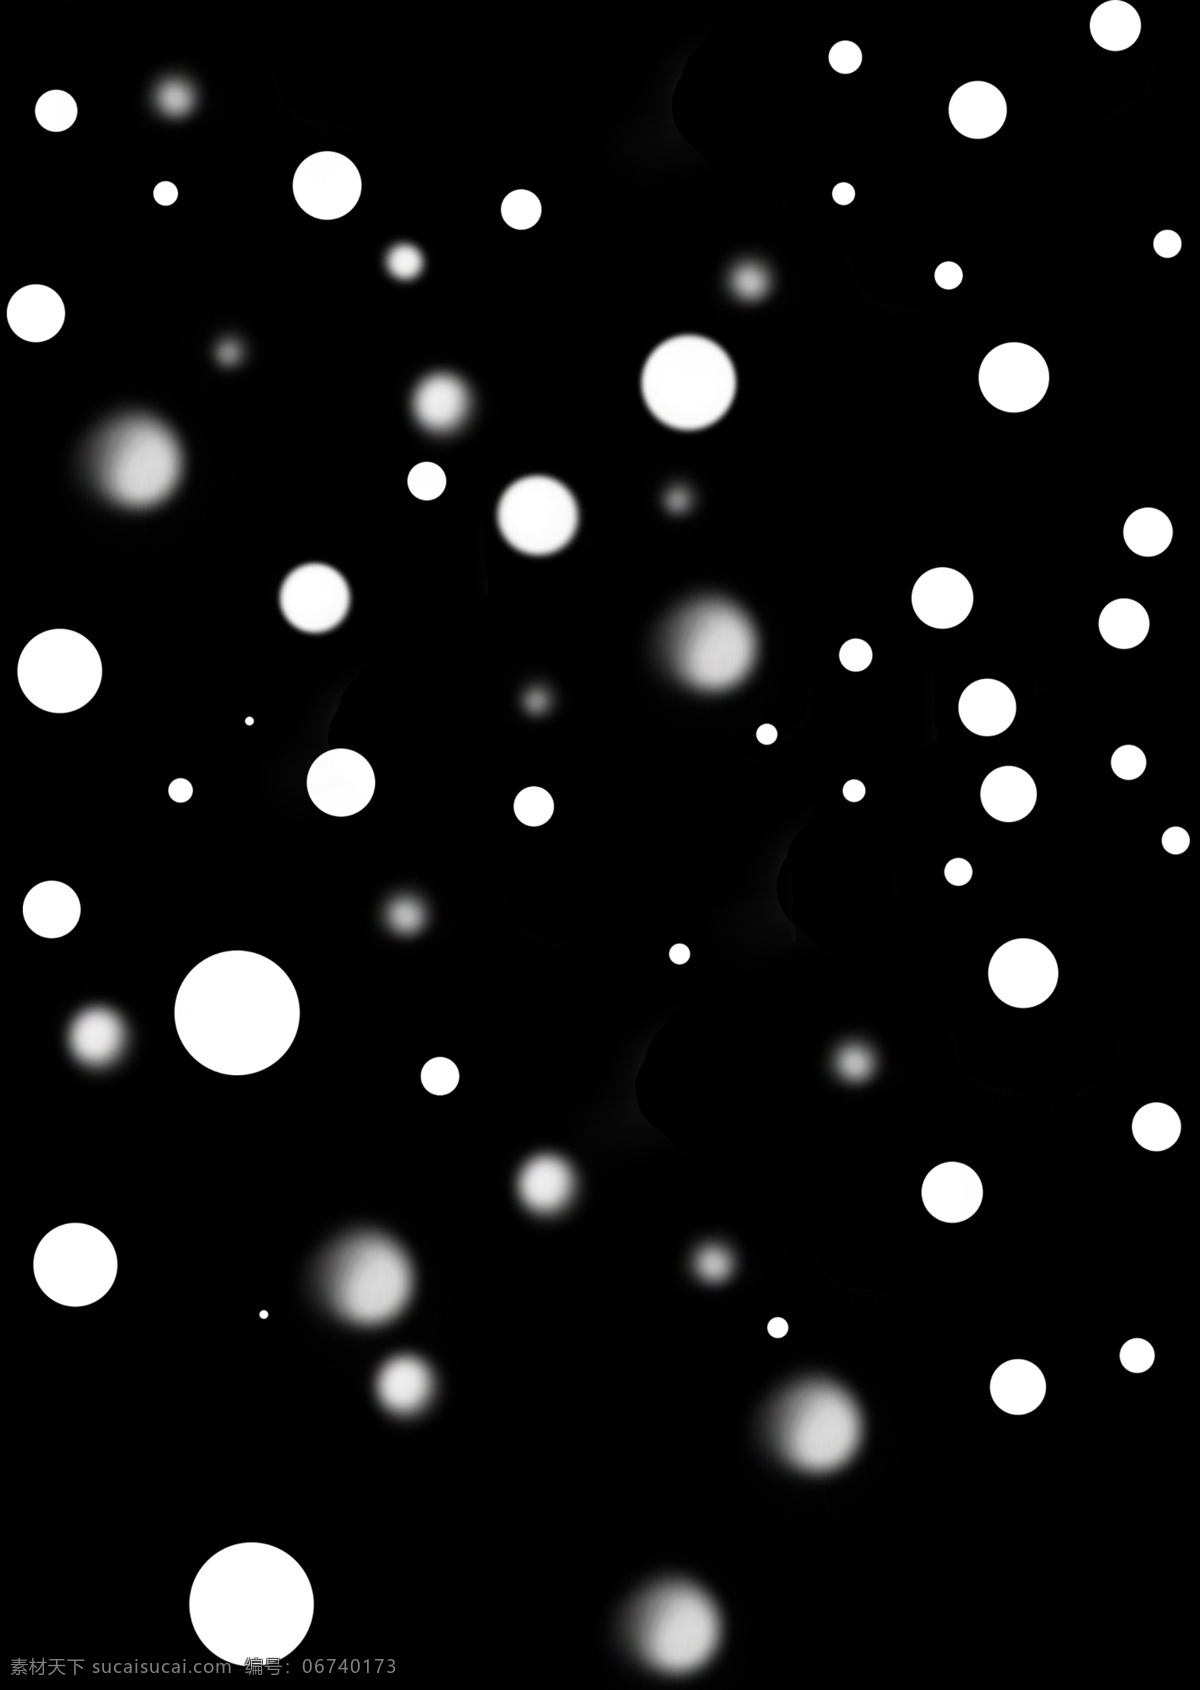 白色光点背景 白雪 光点 背景 白色 圆圈 虚化光圈 雪花 温馨背景 底纹边框 背景底纹